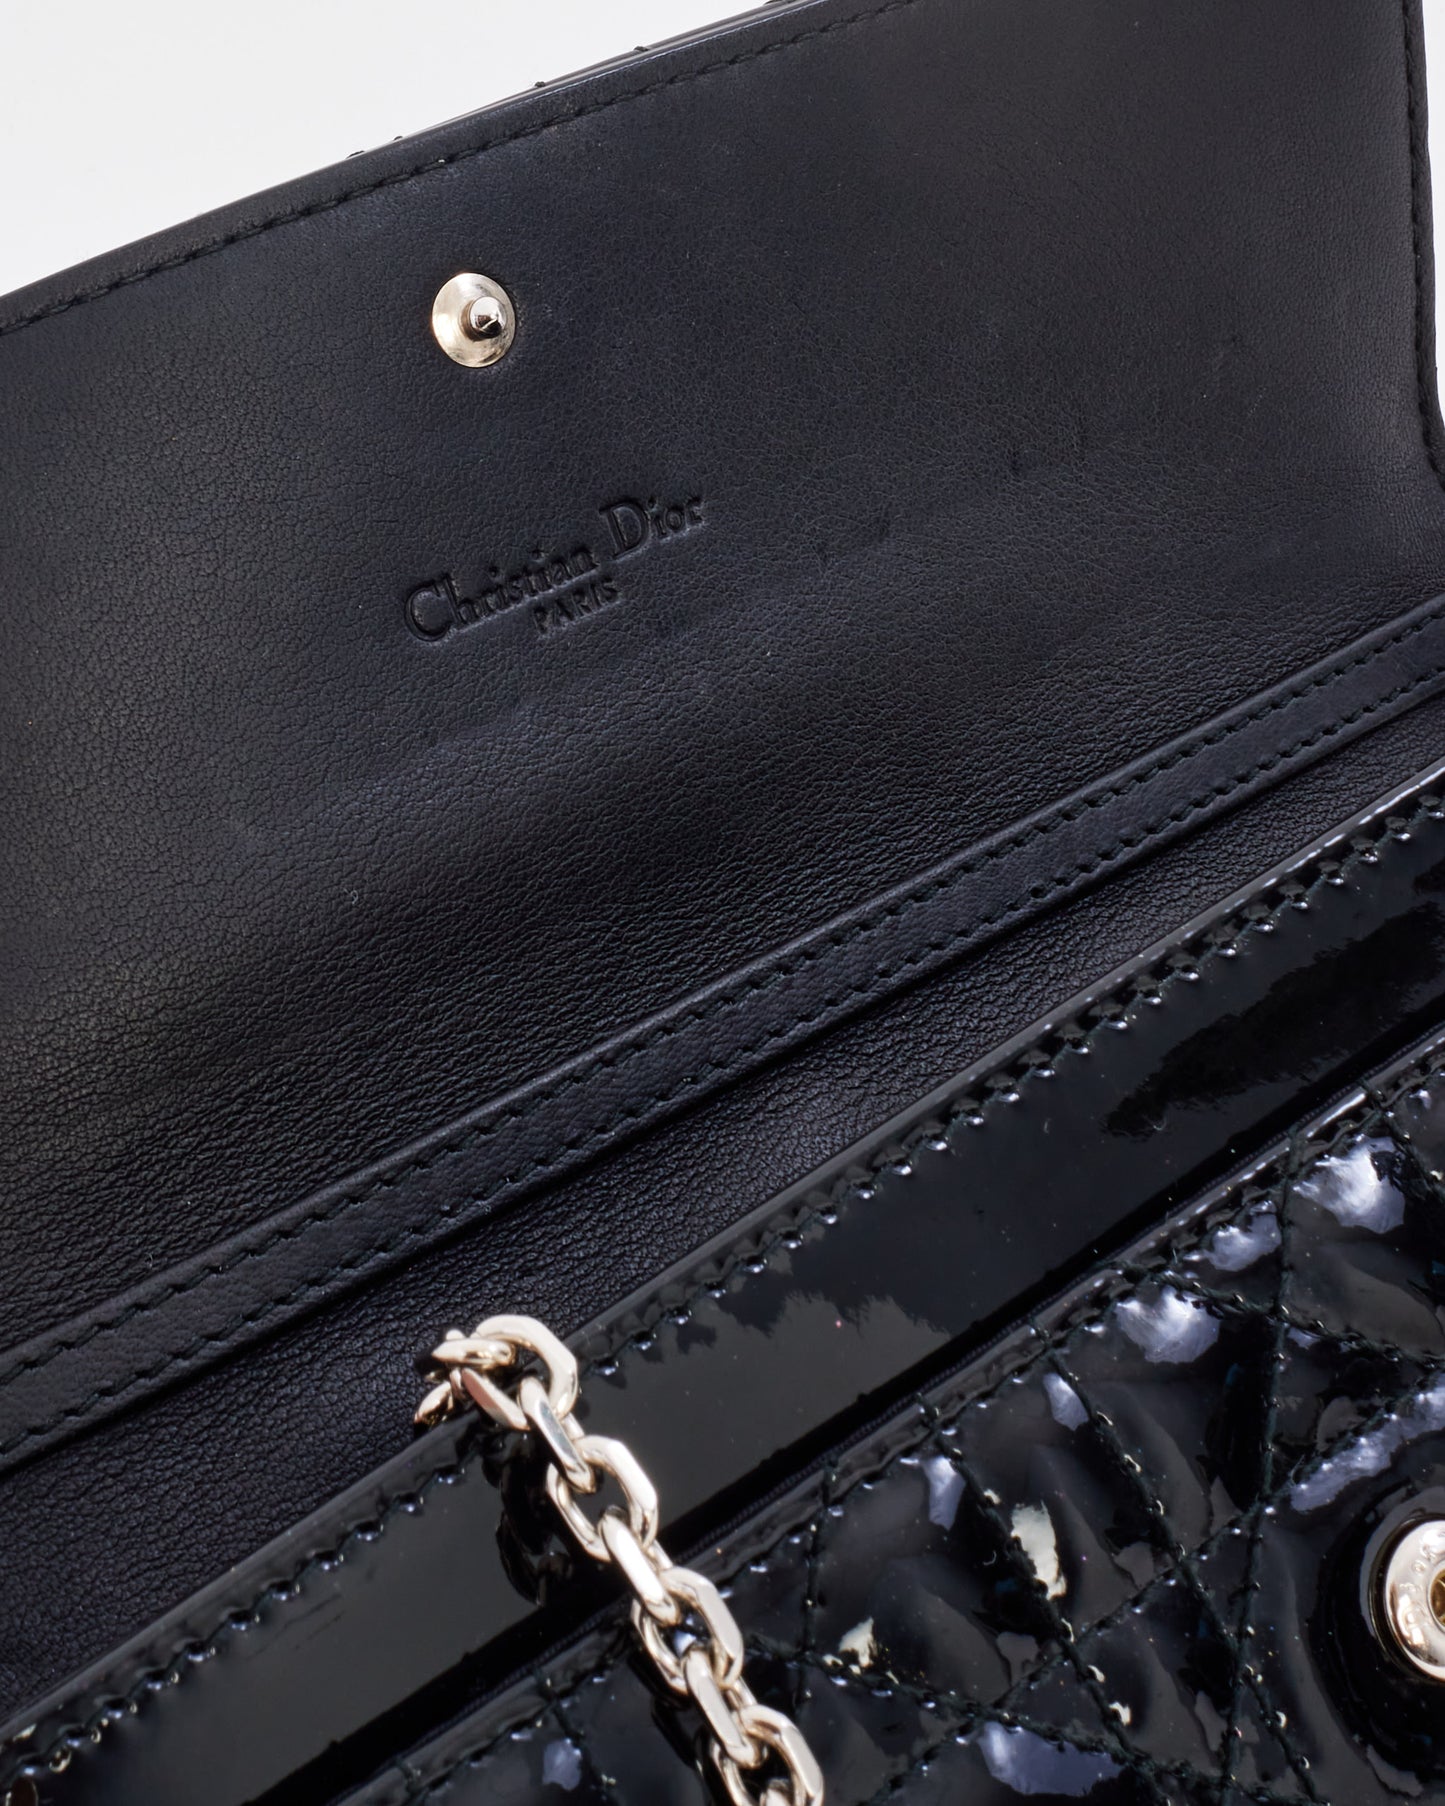 Portefeuille Lady Dior en cuir verni noir Dior sur chaîne